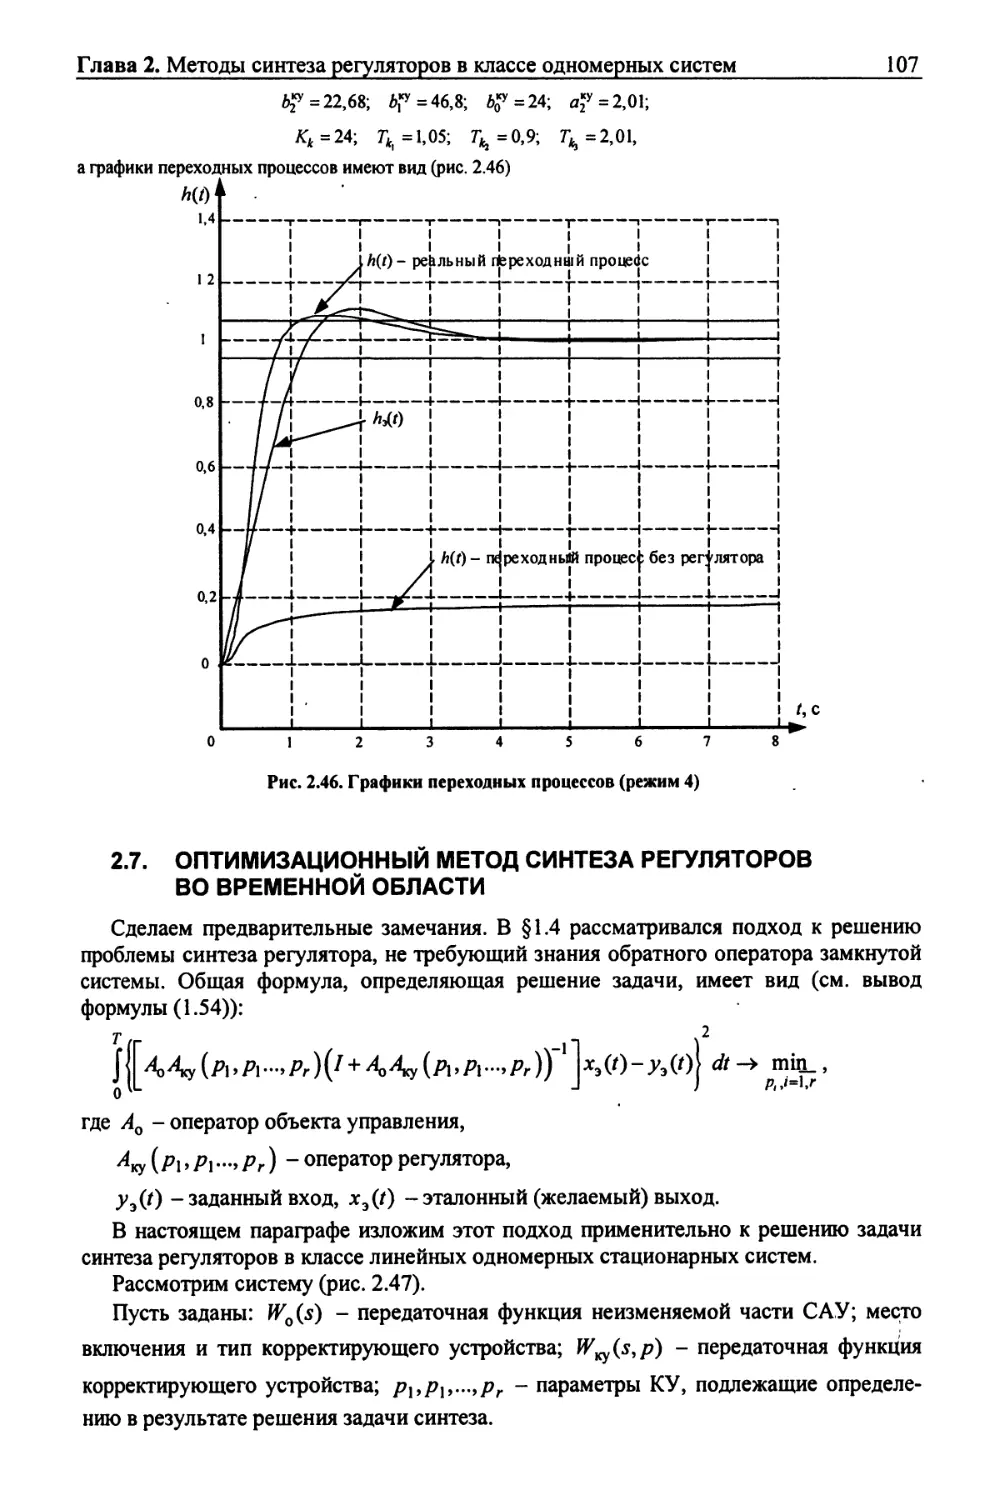 2.7. Оптимизационный метод синтеза регуляторов во временной области